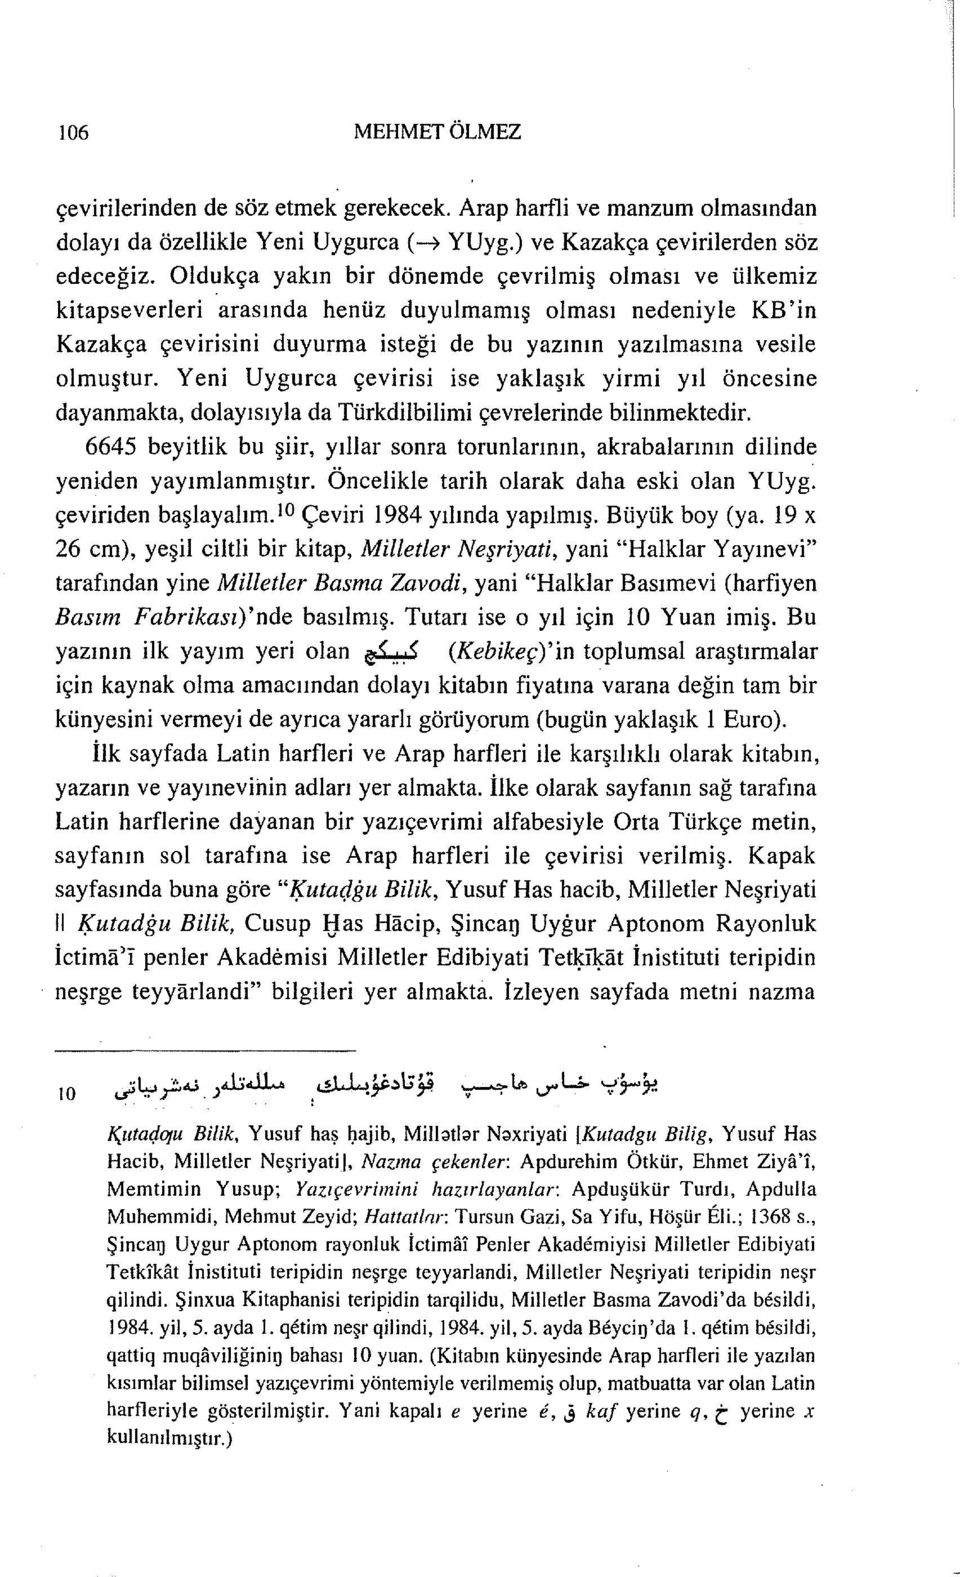 Yeni Uygurca çevirisi ise yaklaşık yirmi yıl öncesine dayanmakta, dolayısıylada Türkdilbilimi çevrelerinde bilinmektedir.